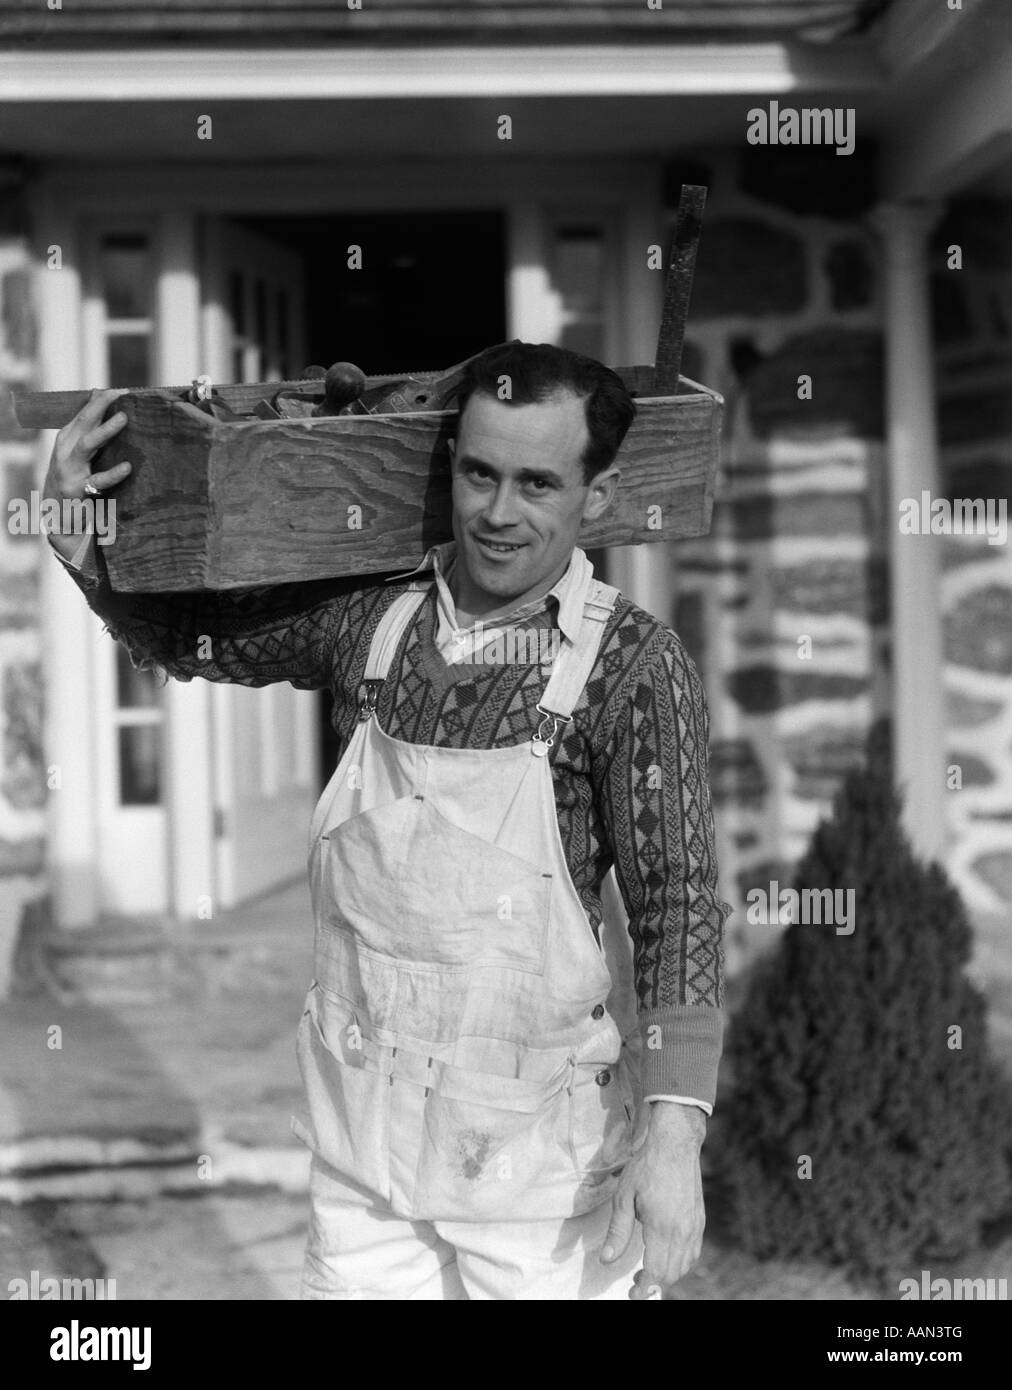 Années 1930 Années 1940 CARPENTER RÉALISATION BOÎTE À OUTILS SUR L'ÉPAULE  portant des bretelles SMILING AT CAMERA Photo Stock - Alamy